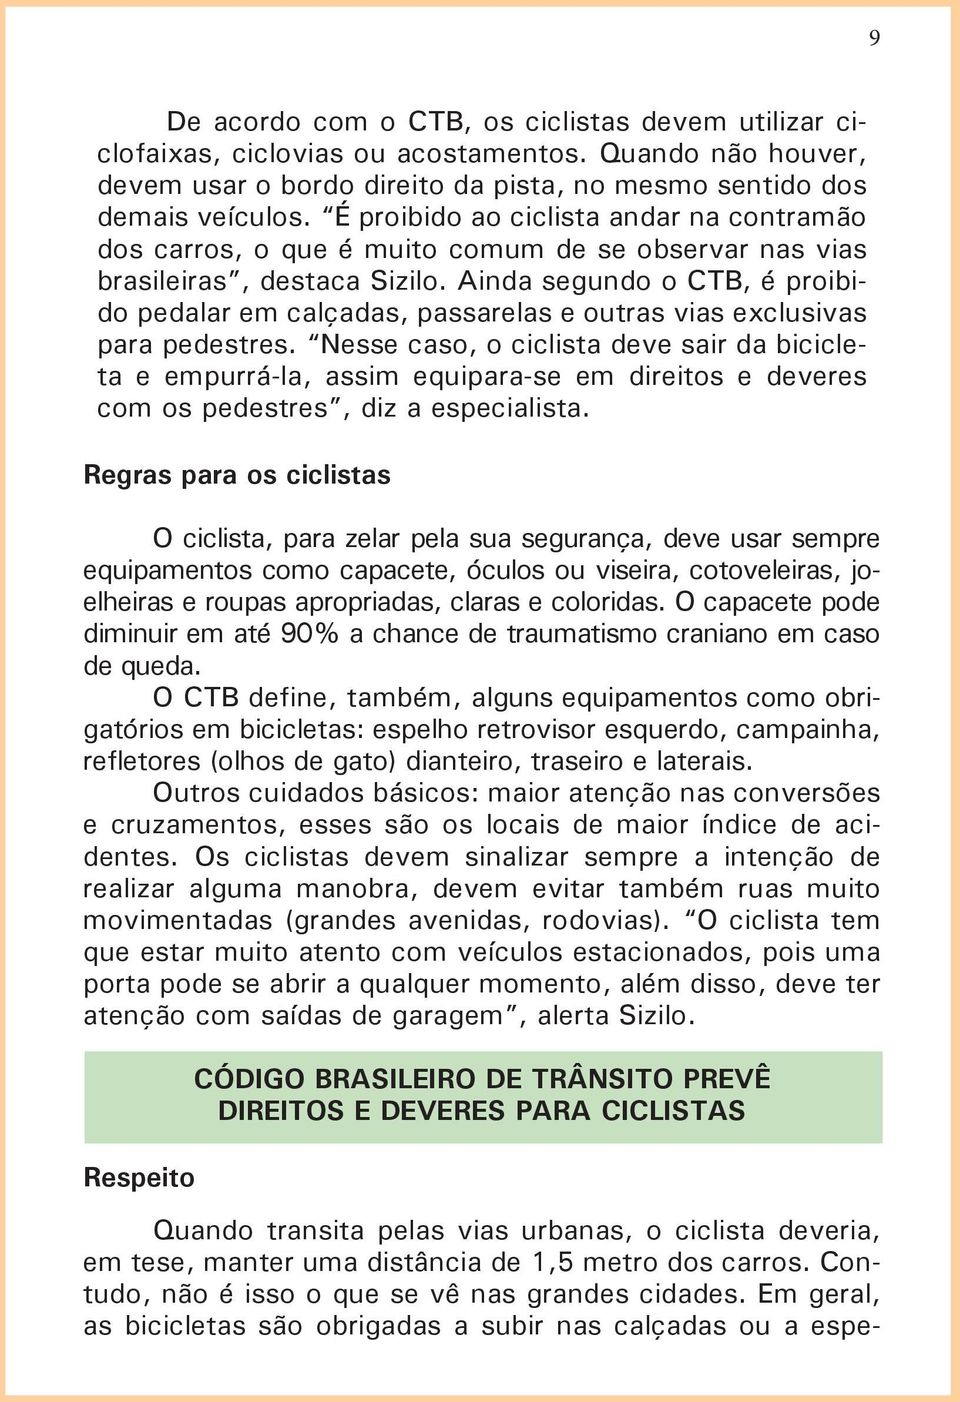 Ainda segundo o CTB, é proibido pedalar em calçadas, passarelas e outras vias exclusivas para pedestres.